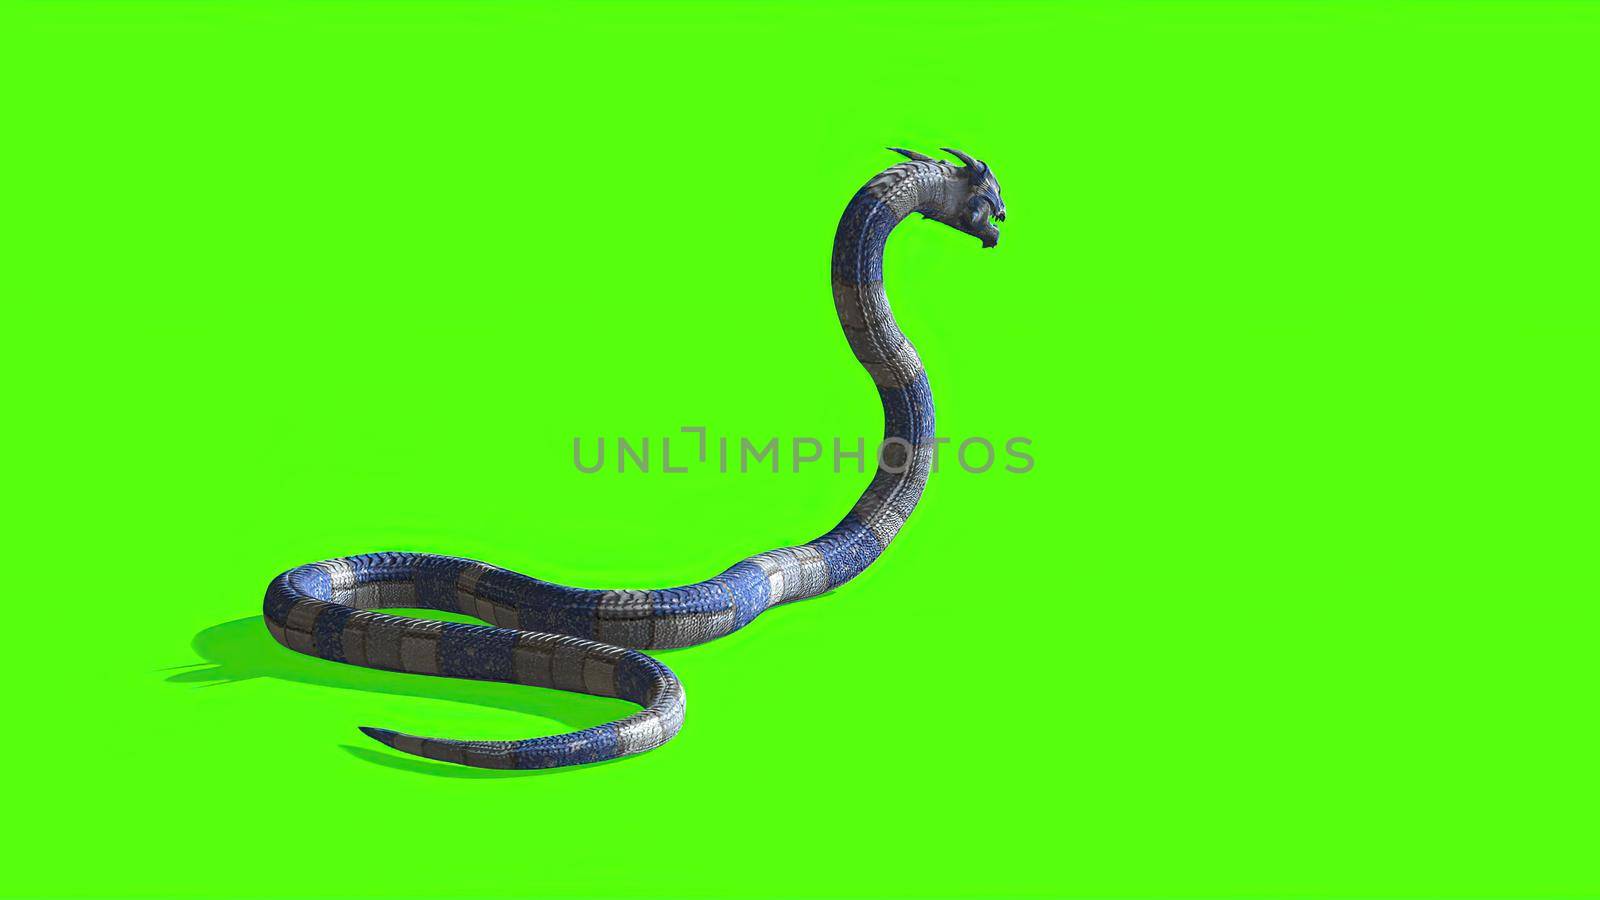 3d illustration - Snake on a Green Screen - background by vitanovski